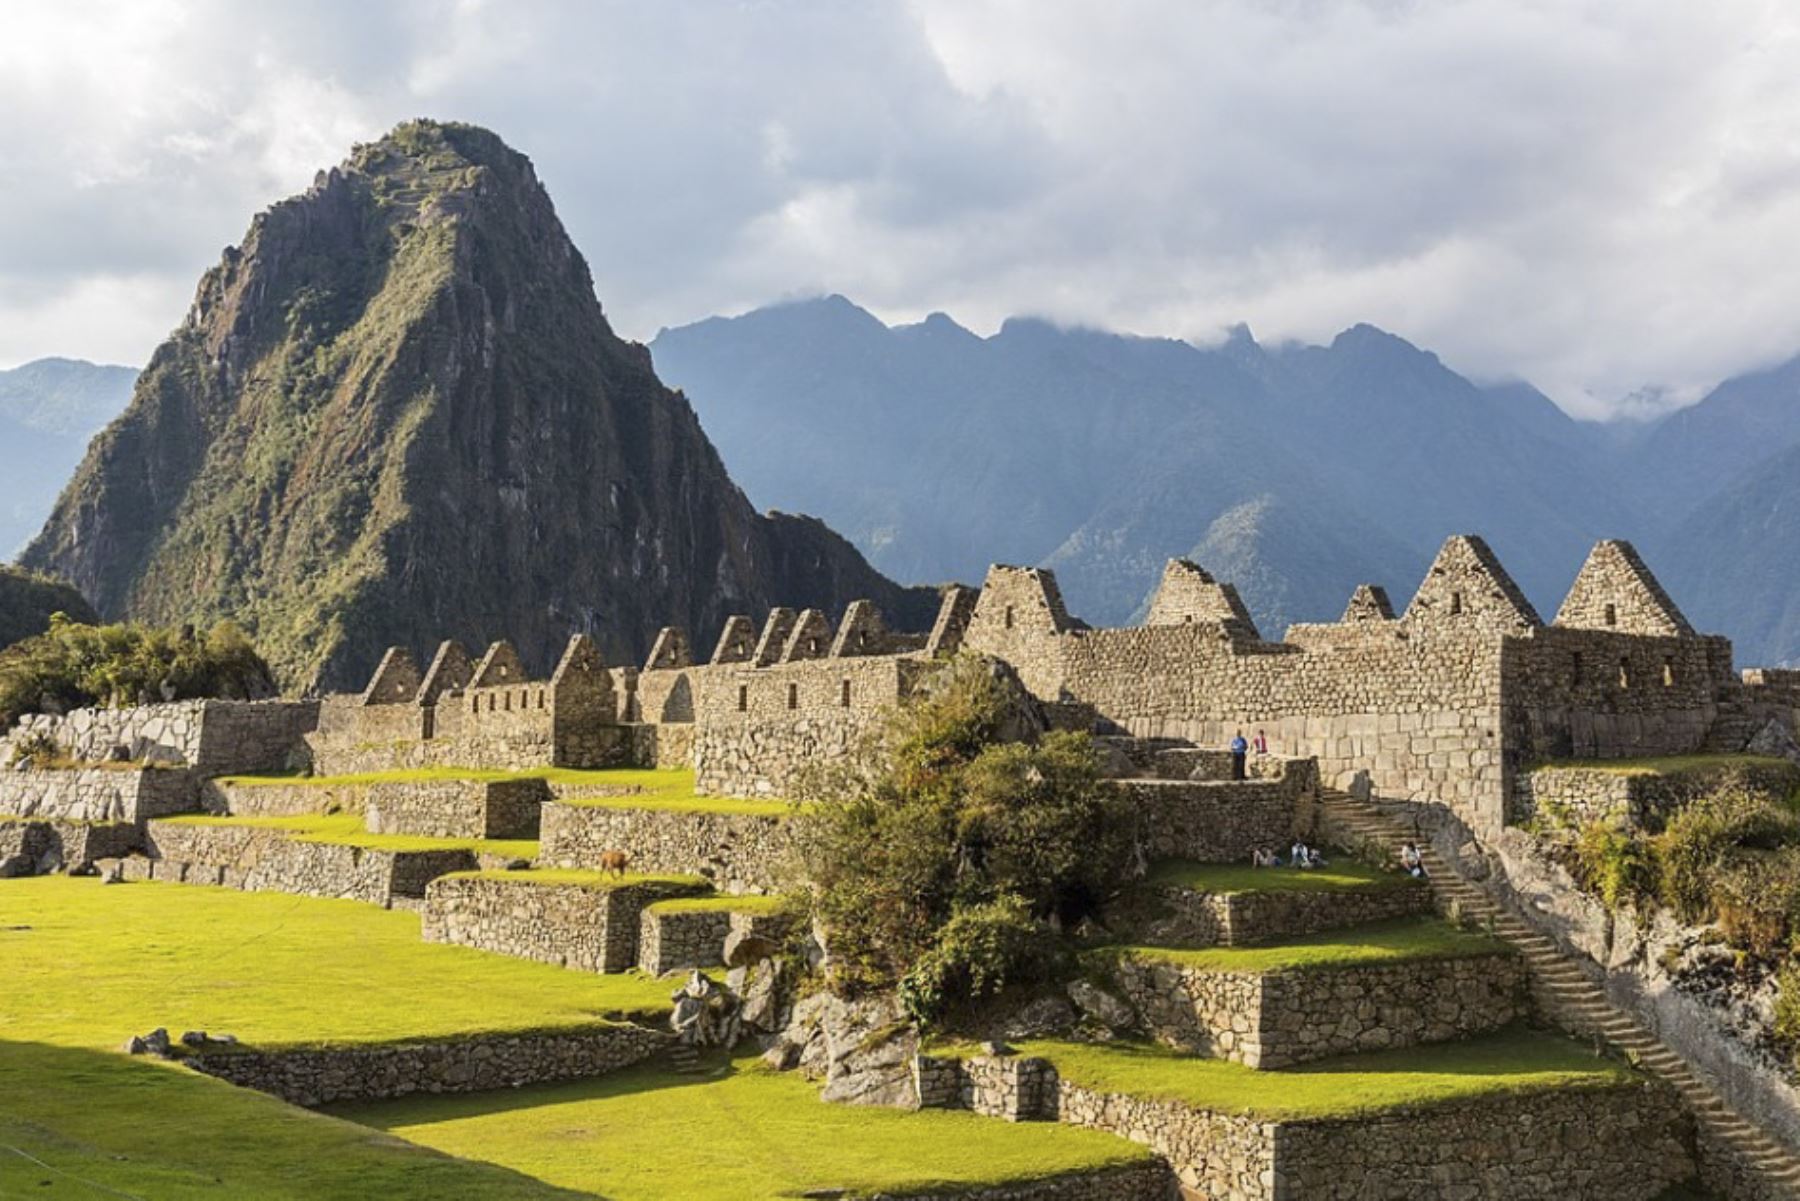 Inca citadel of Mchu Picchu.